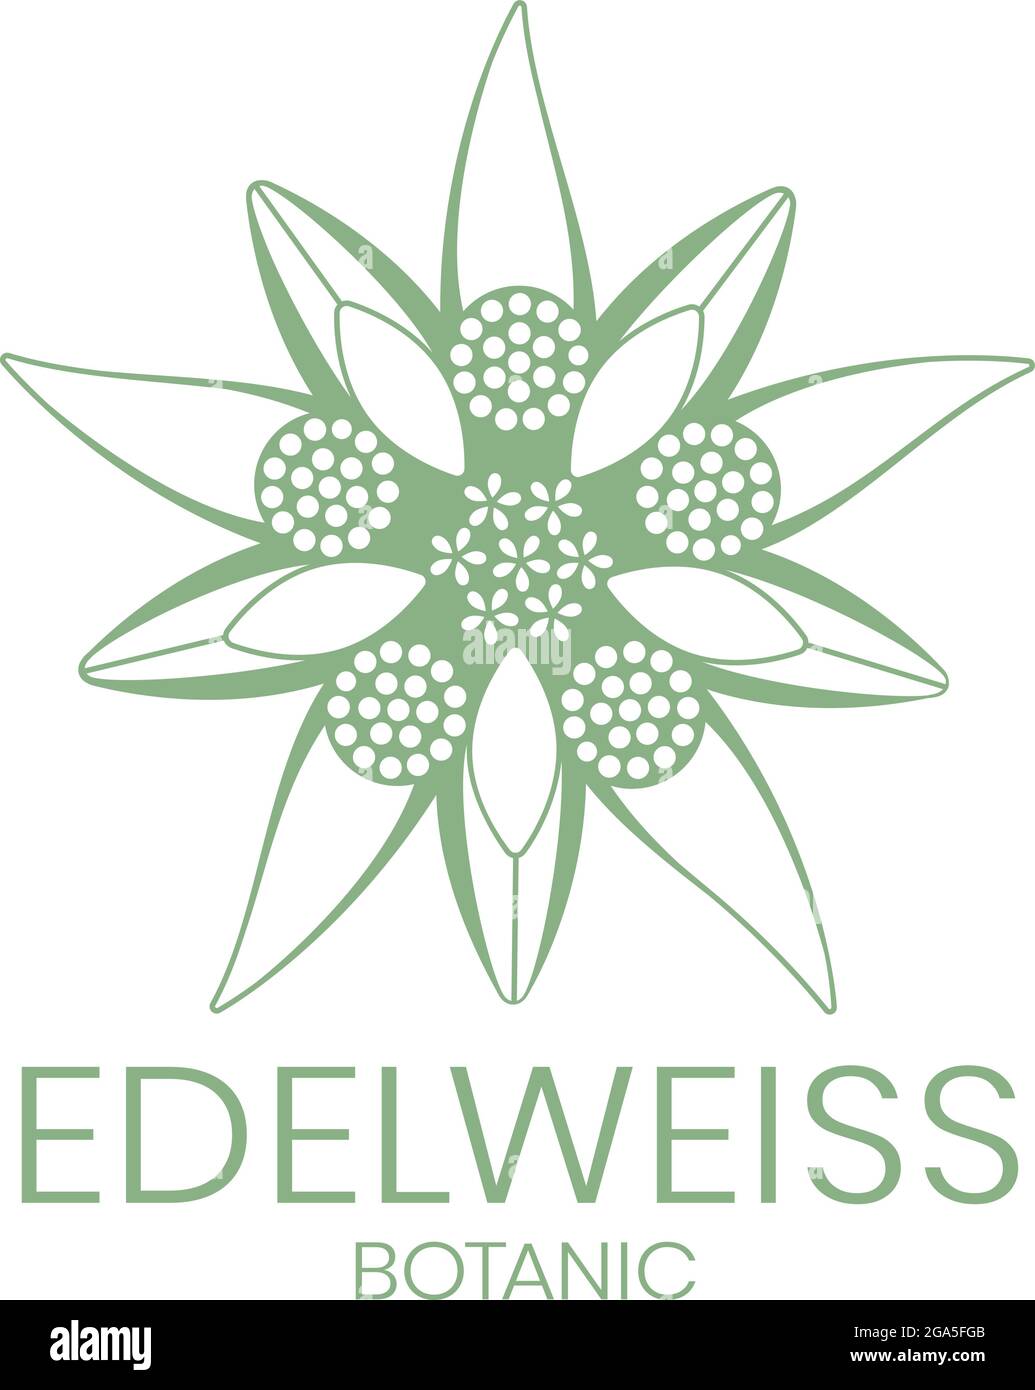 Edelweiss. Edelweiss flower logo on white background. Vector illustration. Stock Vector